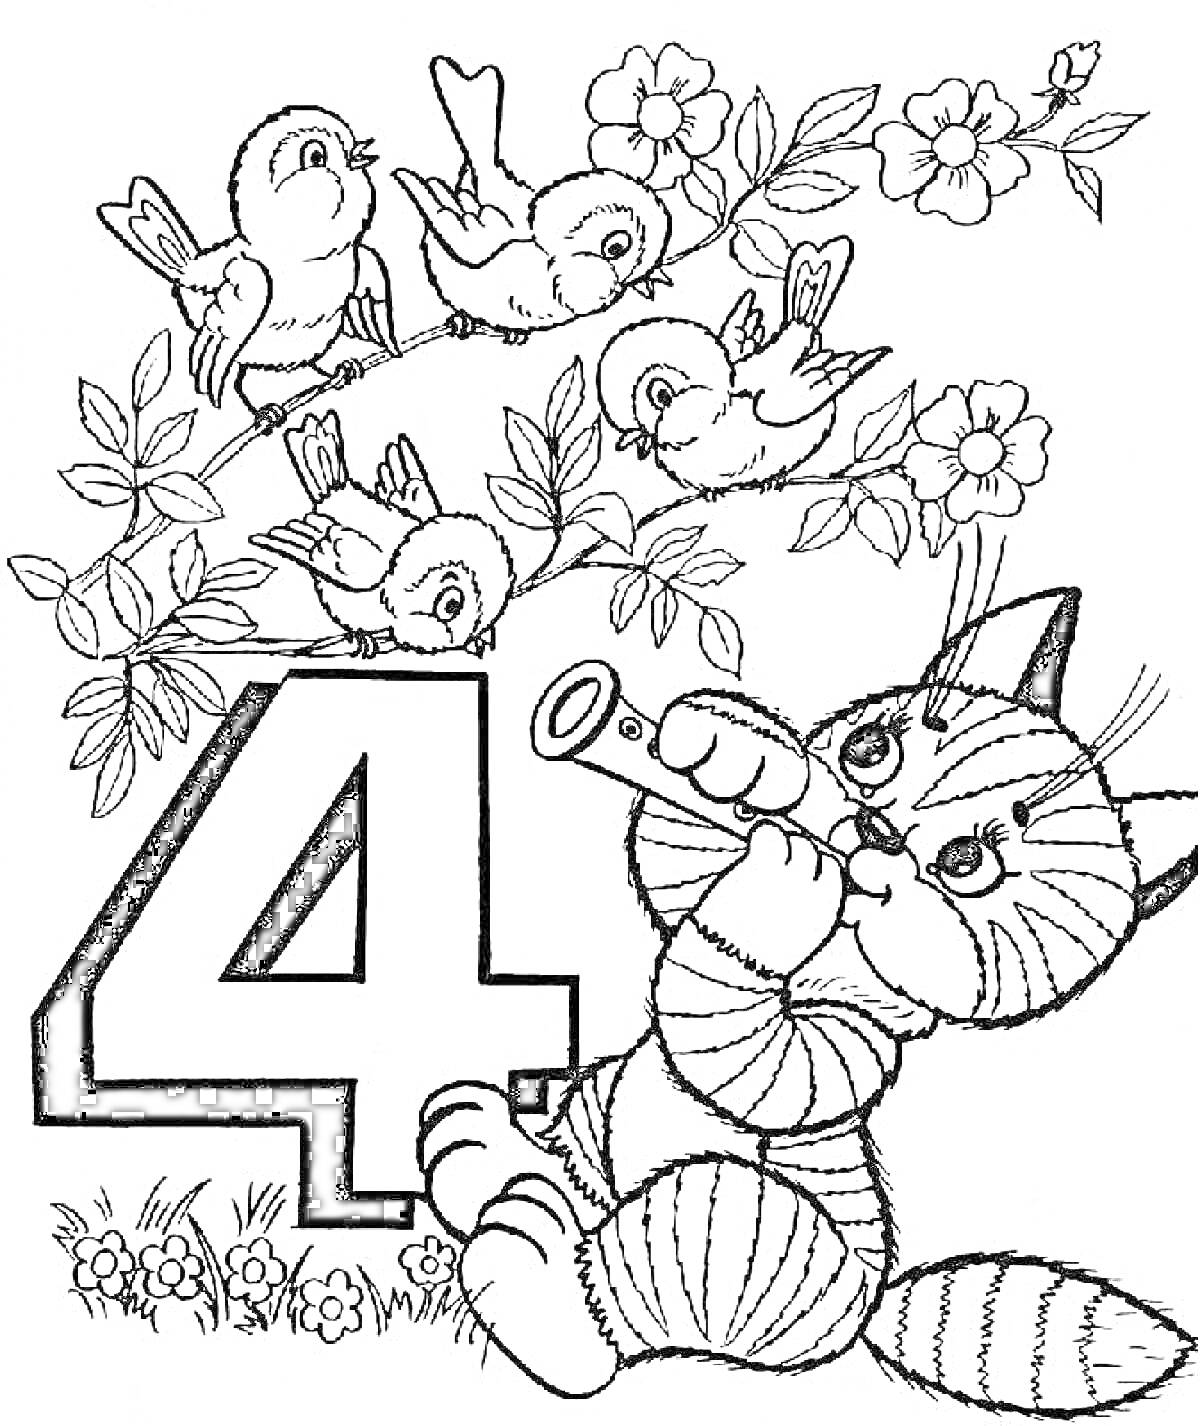 Раскраска Цифра 4, кот с трубой, сидящий на траве, птицы на ветке с цветами